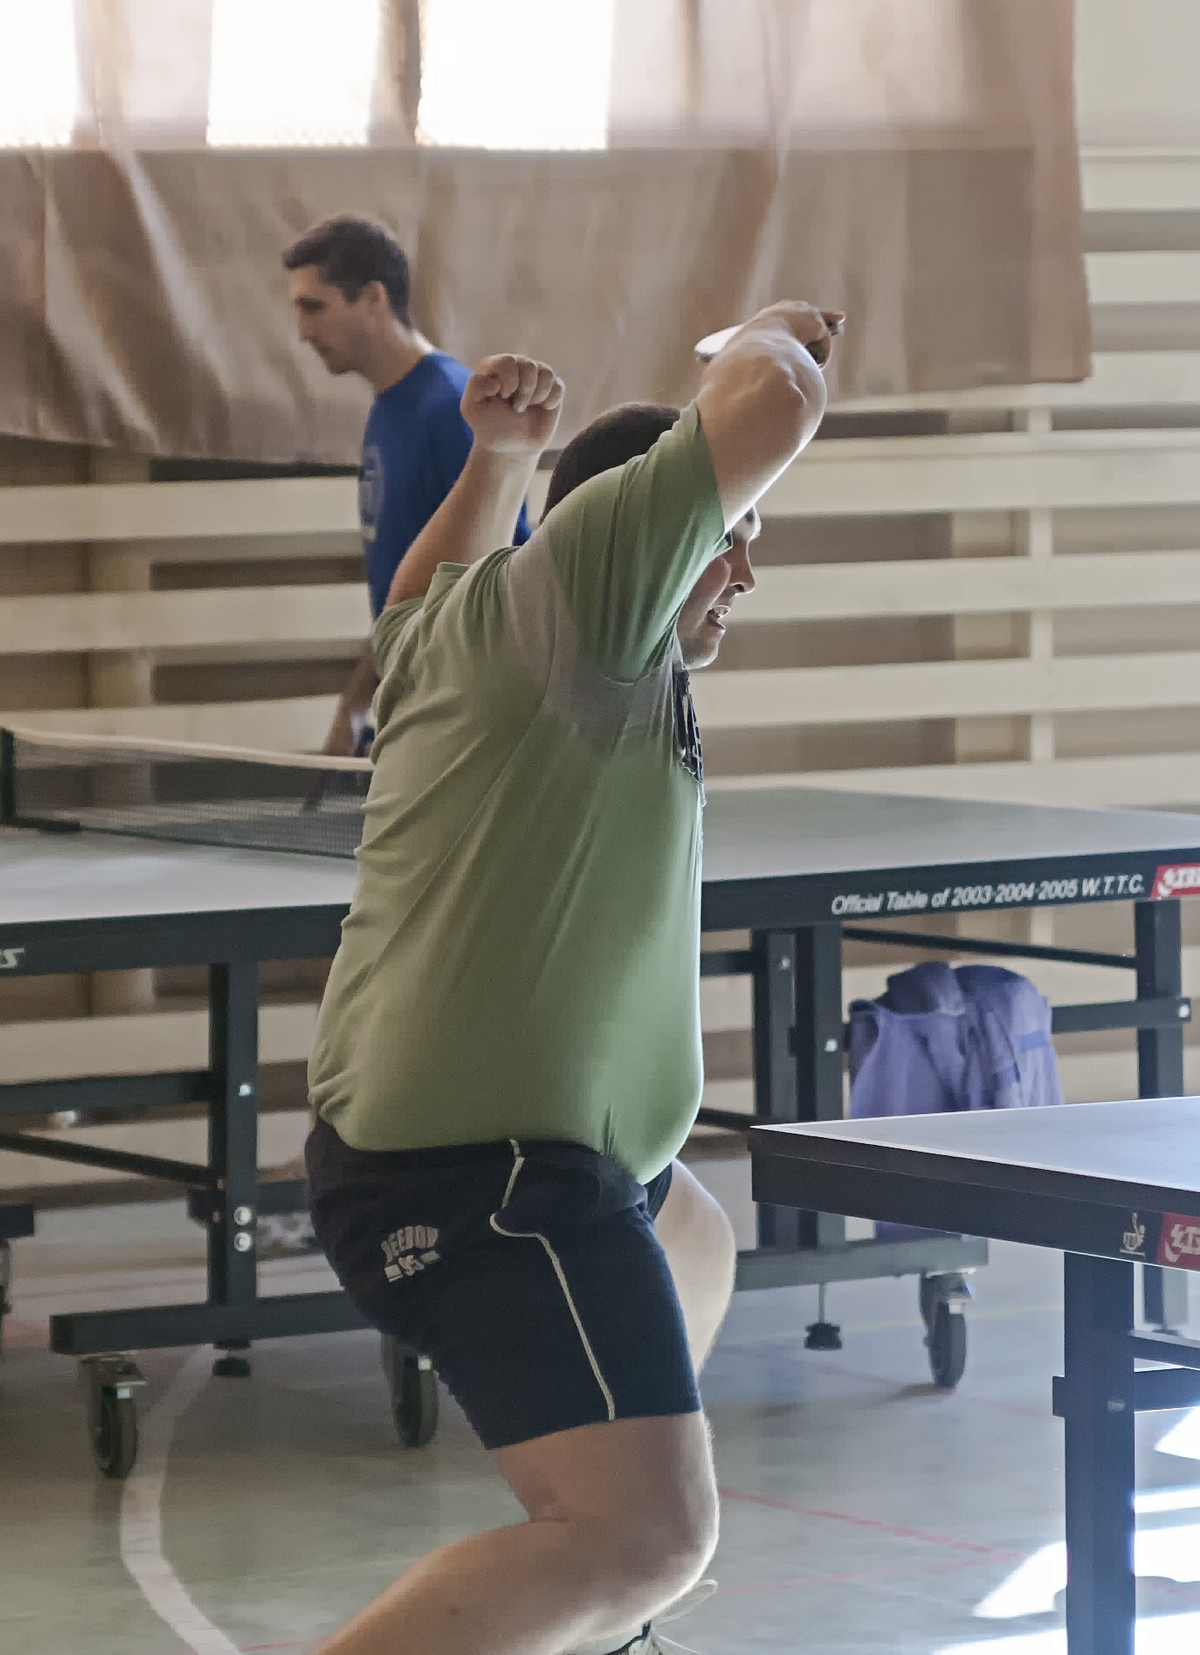 Мастер спорта по штанге вполне успешно совмещает штангу с занятием настольным теннисом. настольный теннис пинг-понг спорт table tennis ping-pong sport